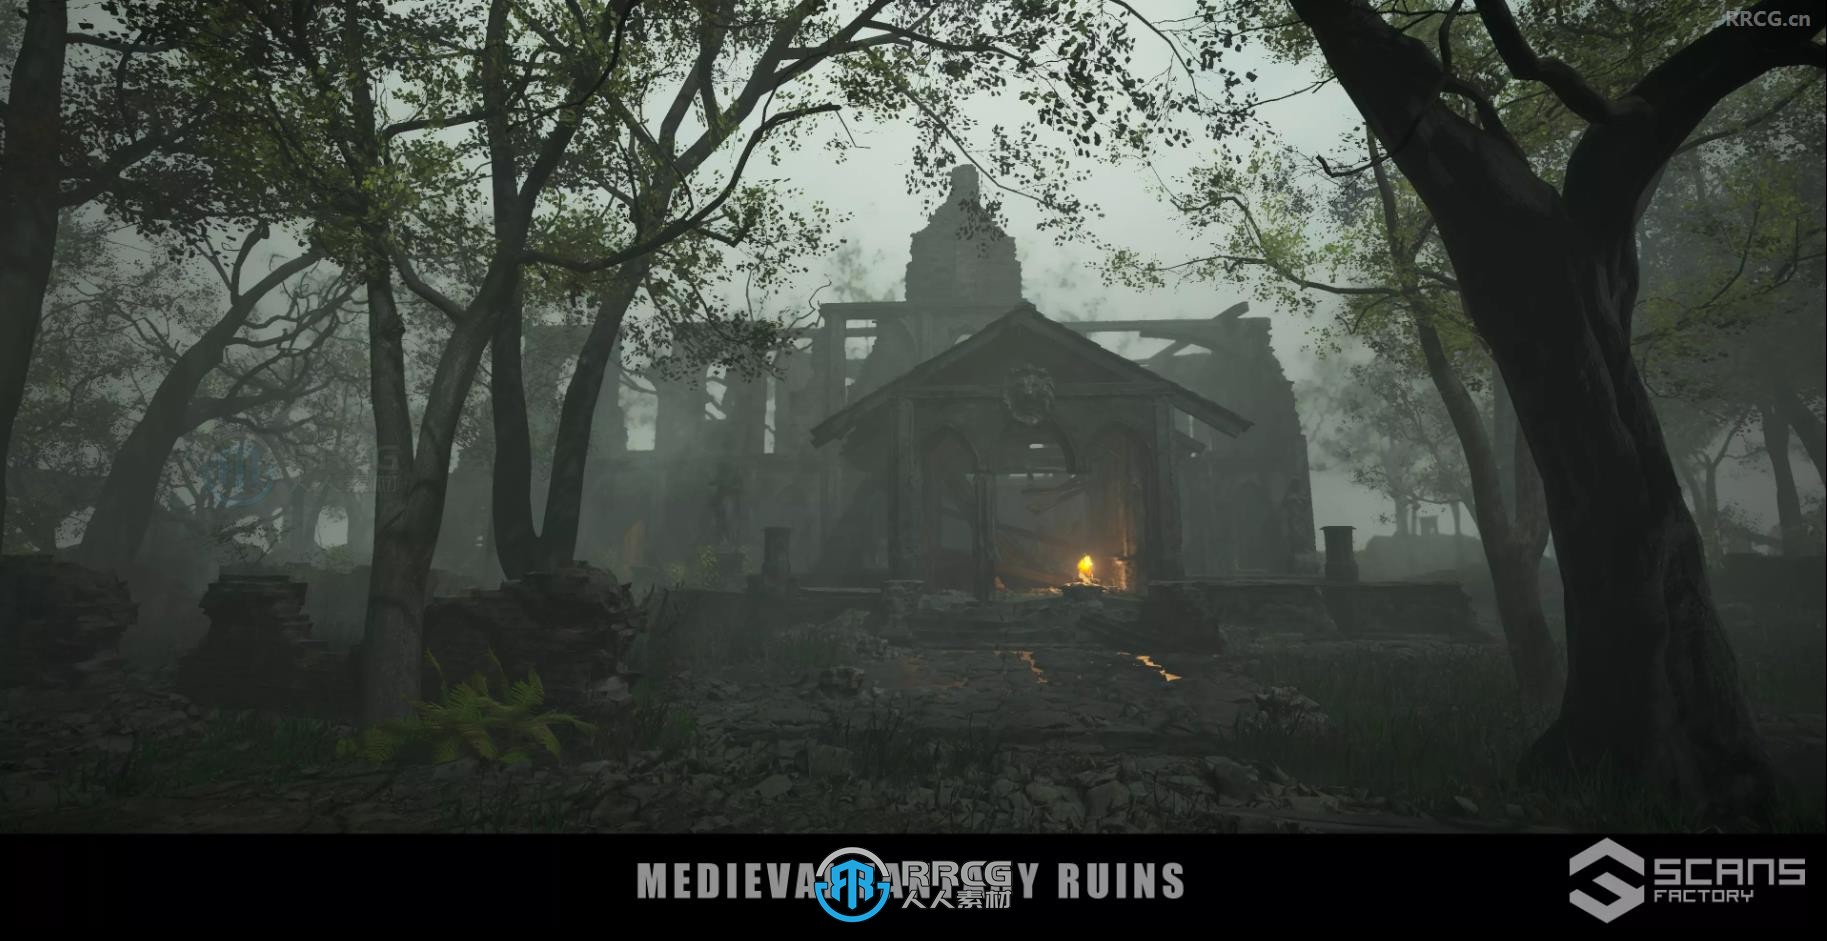 中世纪黑暗森林奇幻废墟环境场景Unity游戏素材